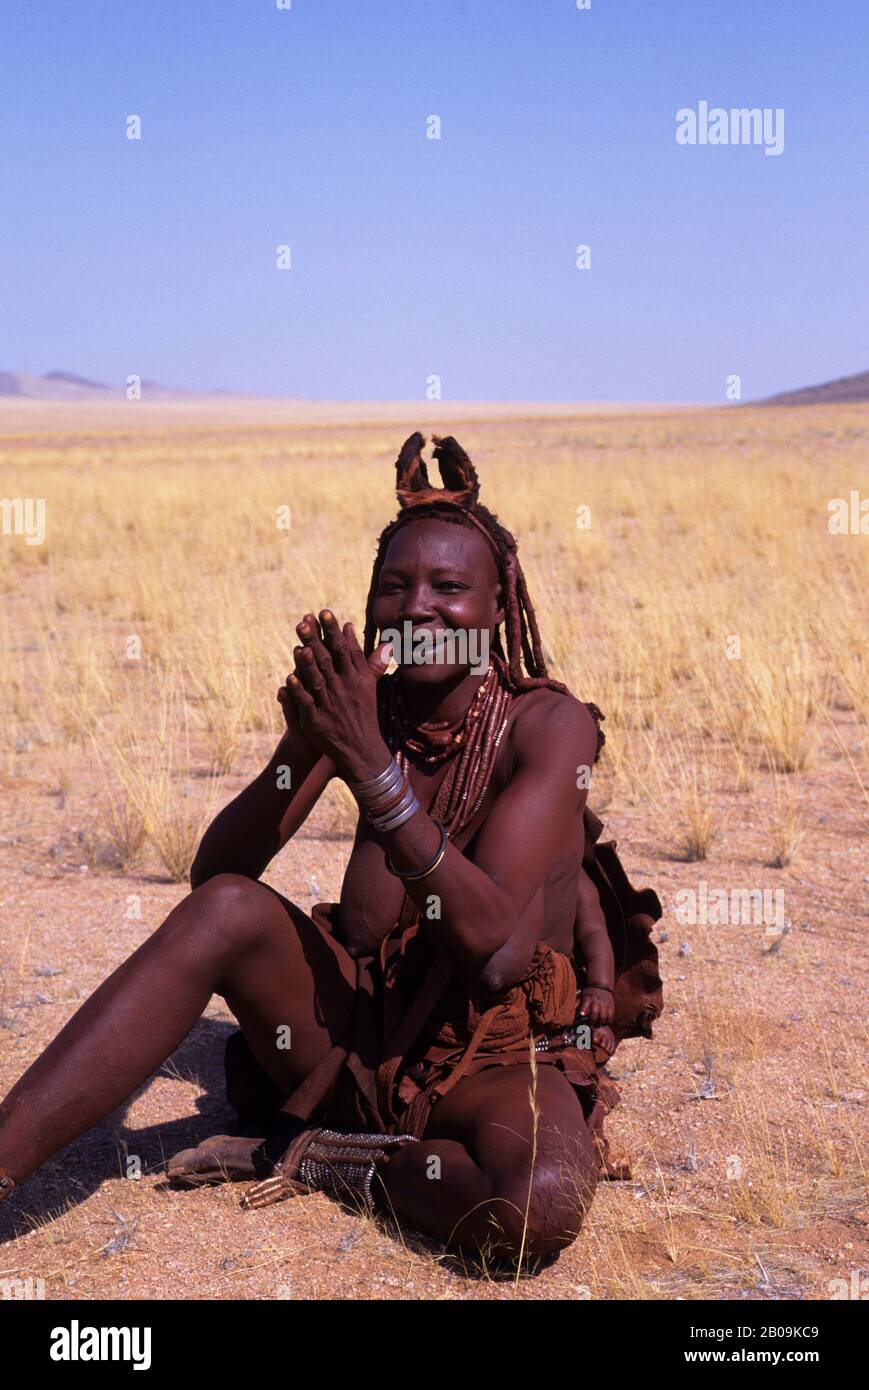 NAMIBIA, SKELETON COAST, KUNENE AREA, HIMBA WOMAN Stock Photo